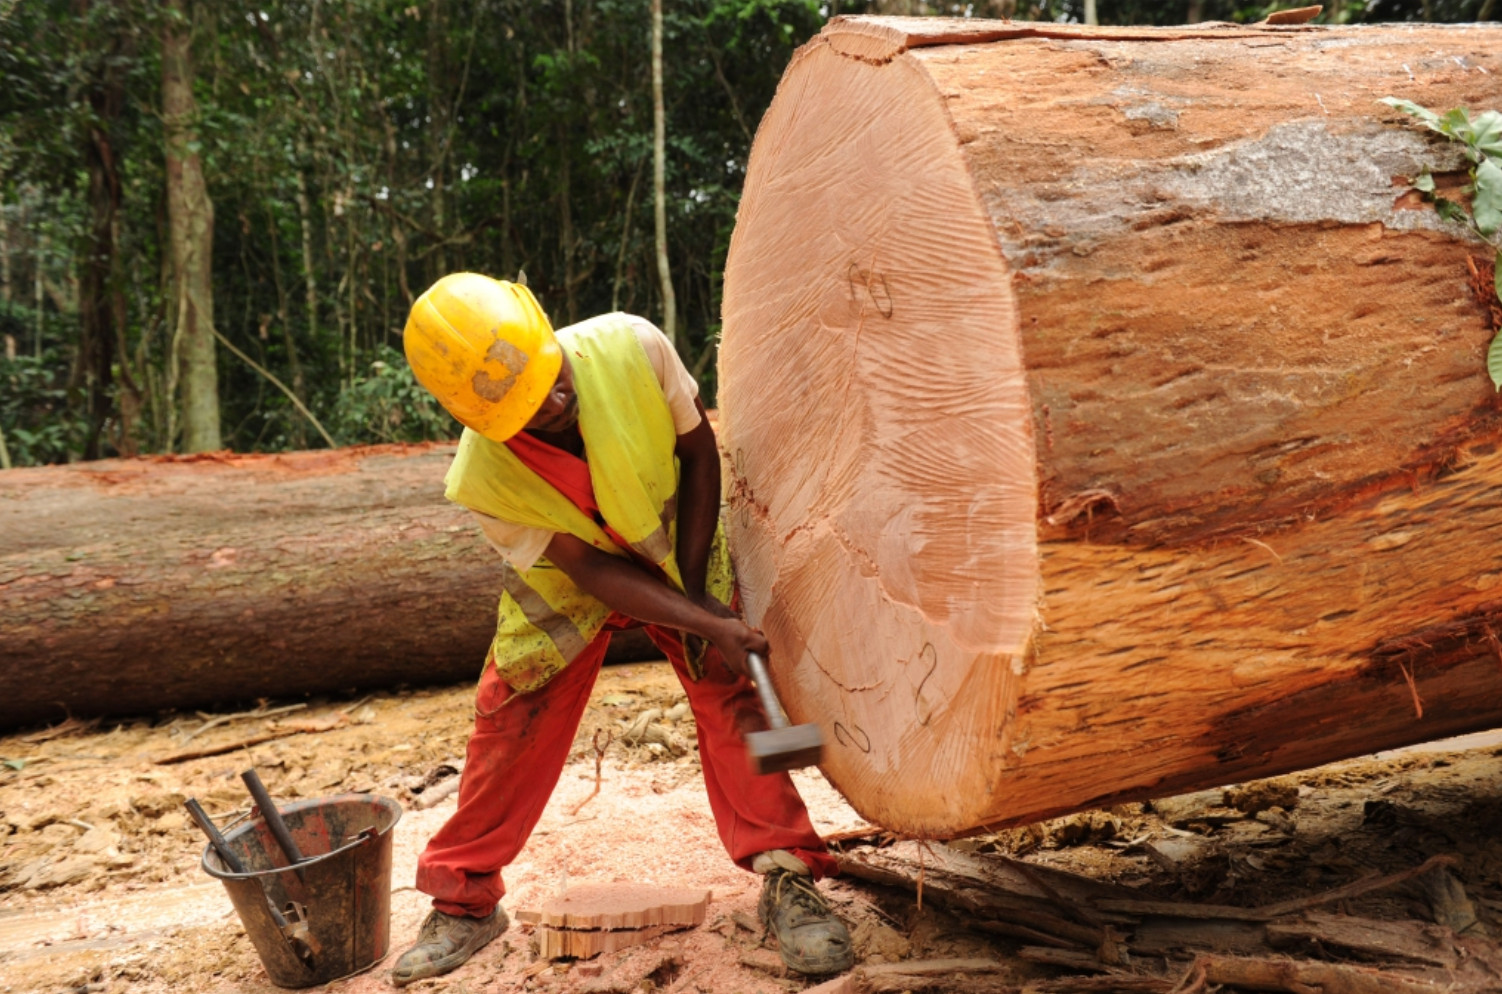 Contrebande transfrontalière: Le trafic de bois au Cameroun va à l’encontre de la croissance économique